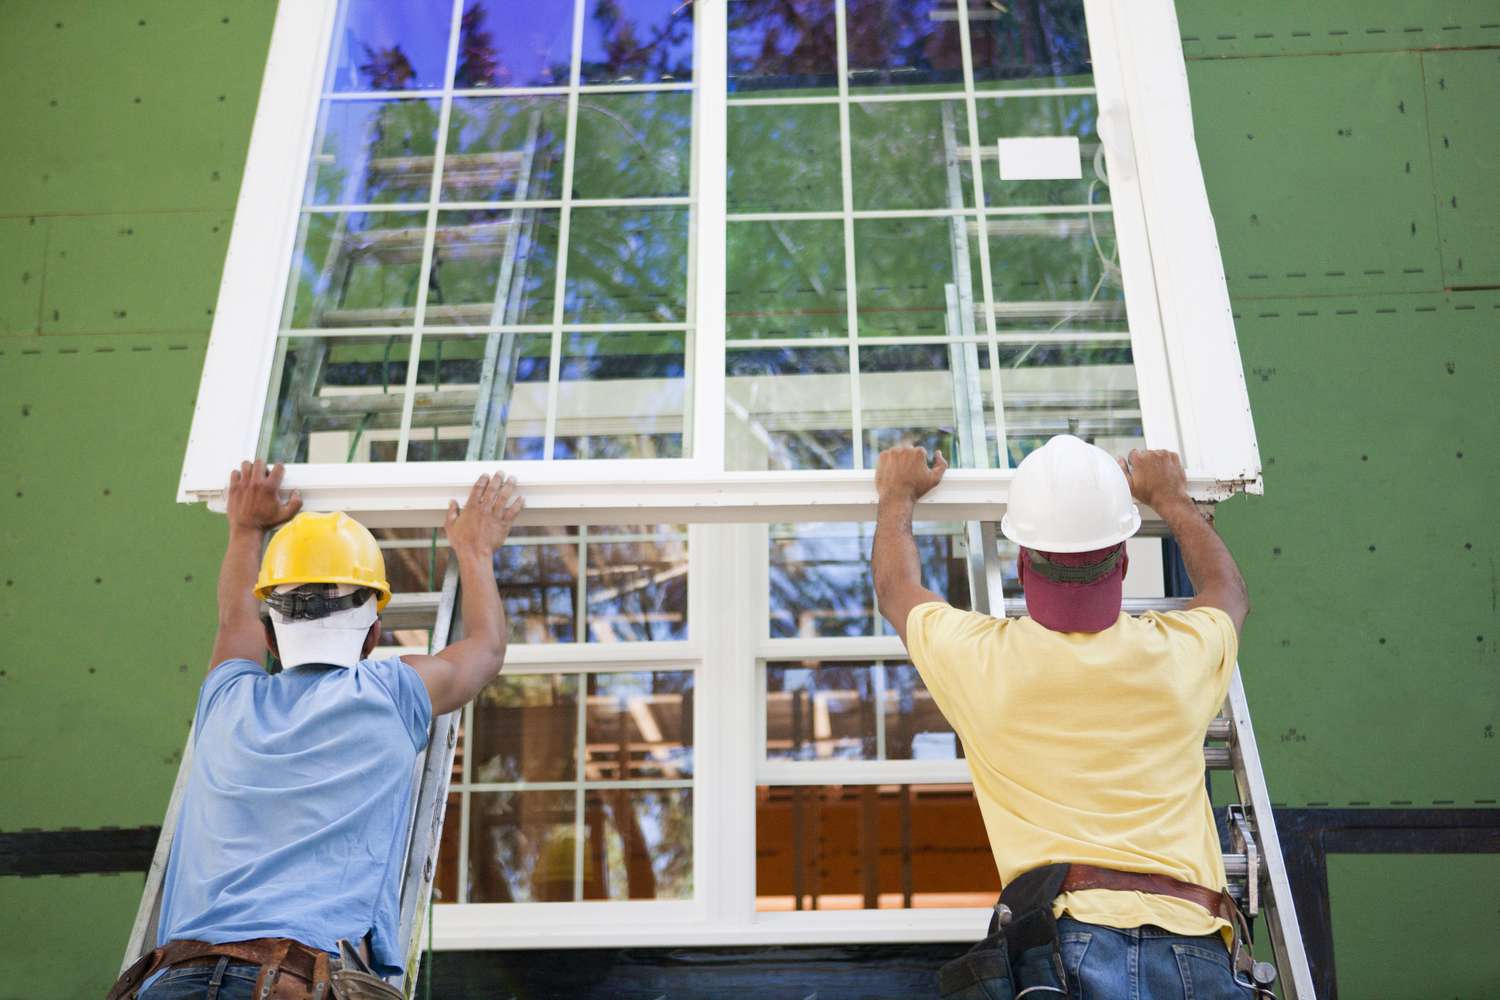 As novas janelas se pagam com a economia de energia?